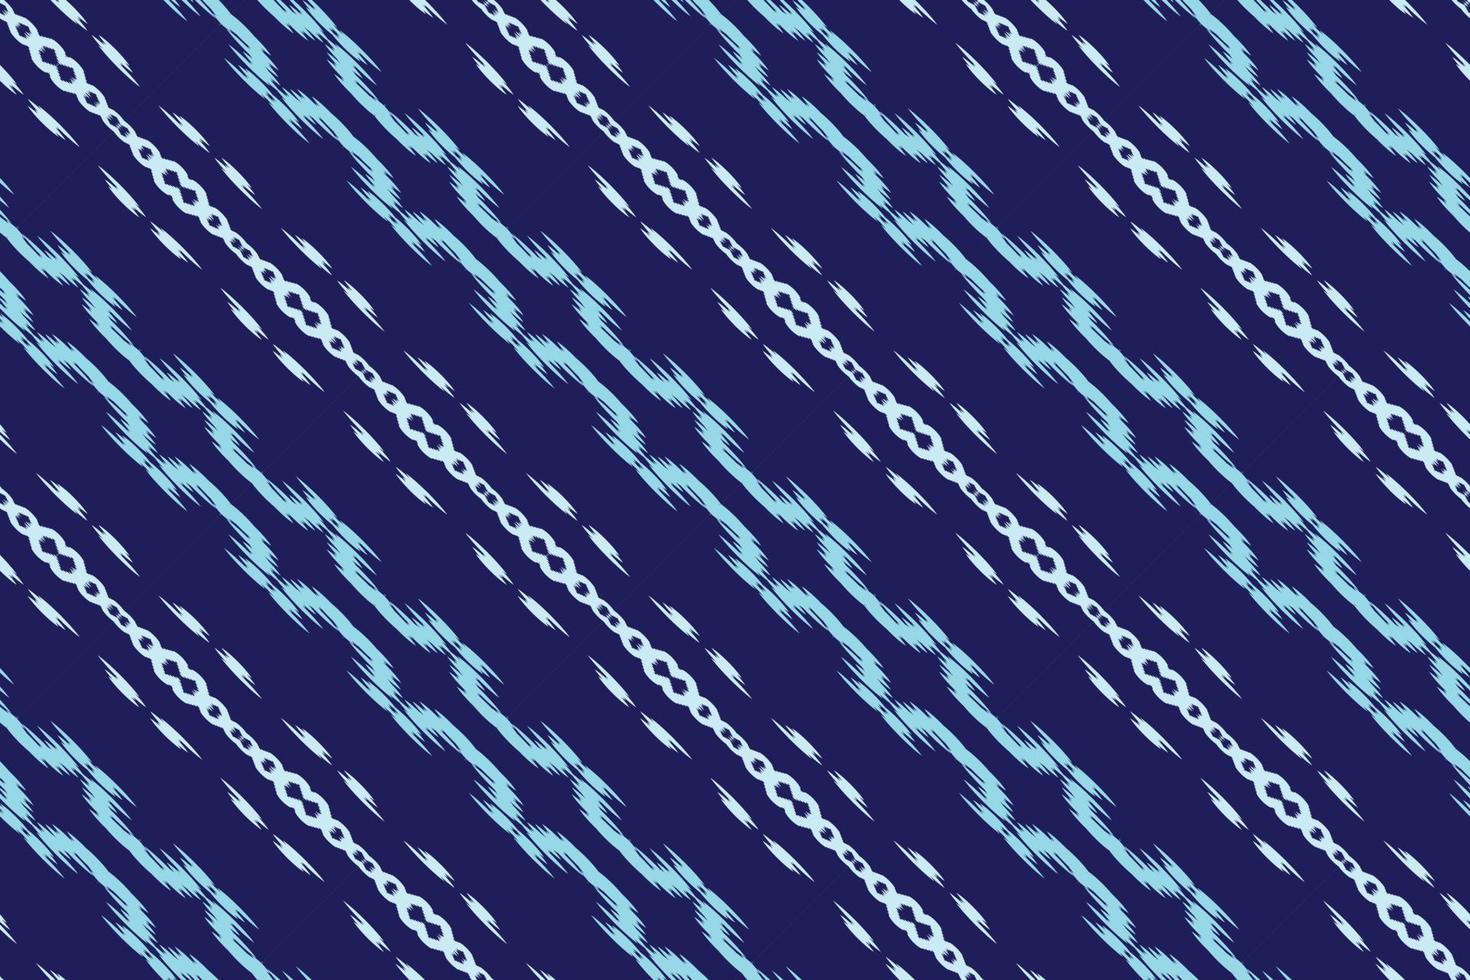 batik textil ikat impresión de patrones sin fisuras diseño vectorial digital para impresión saree kurti borde de tela símbolos de pincel muestras diseñador vector